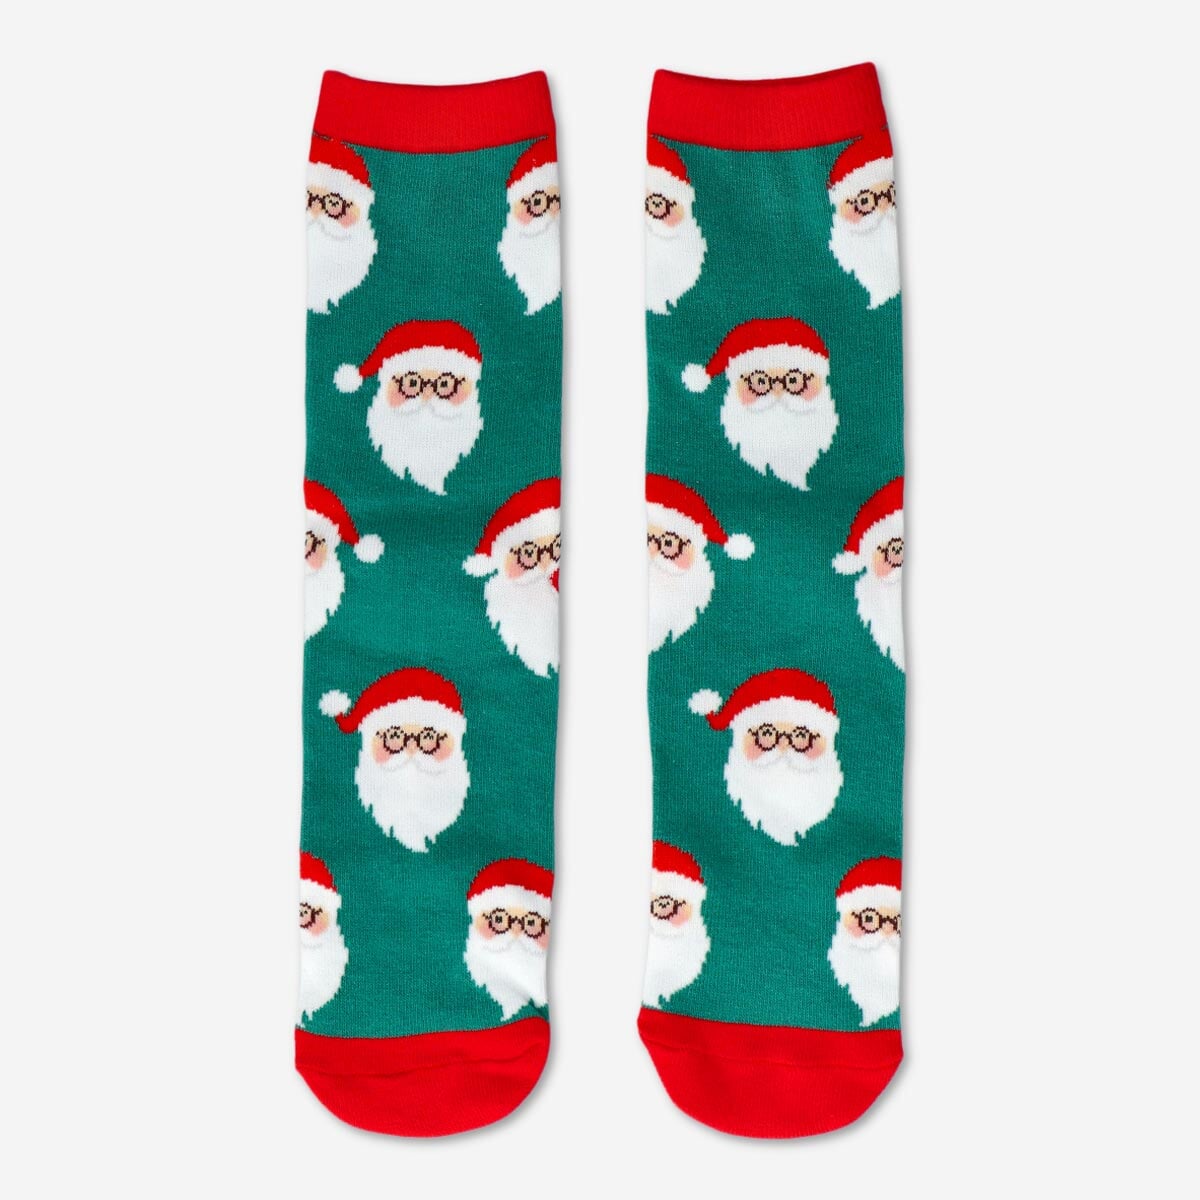 Je BFF voor Kerstmis: De sokkenliefhebber